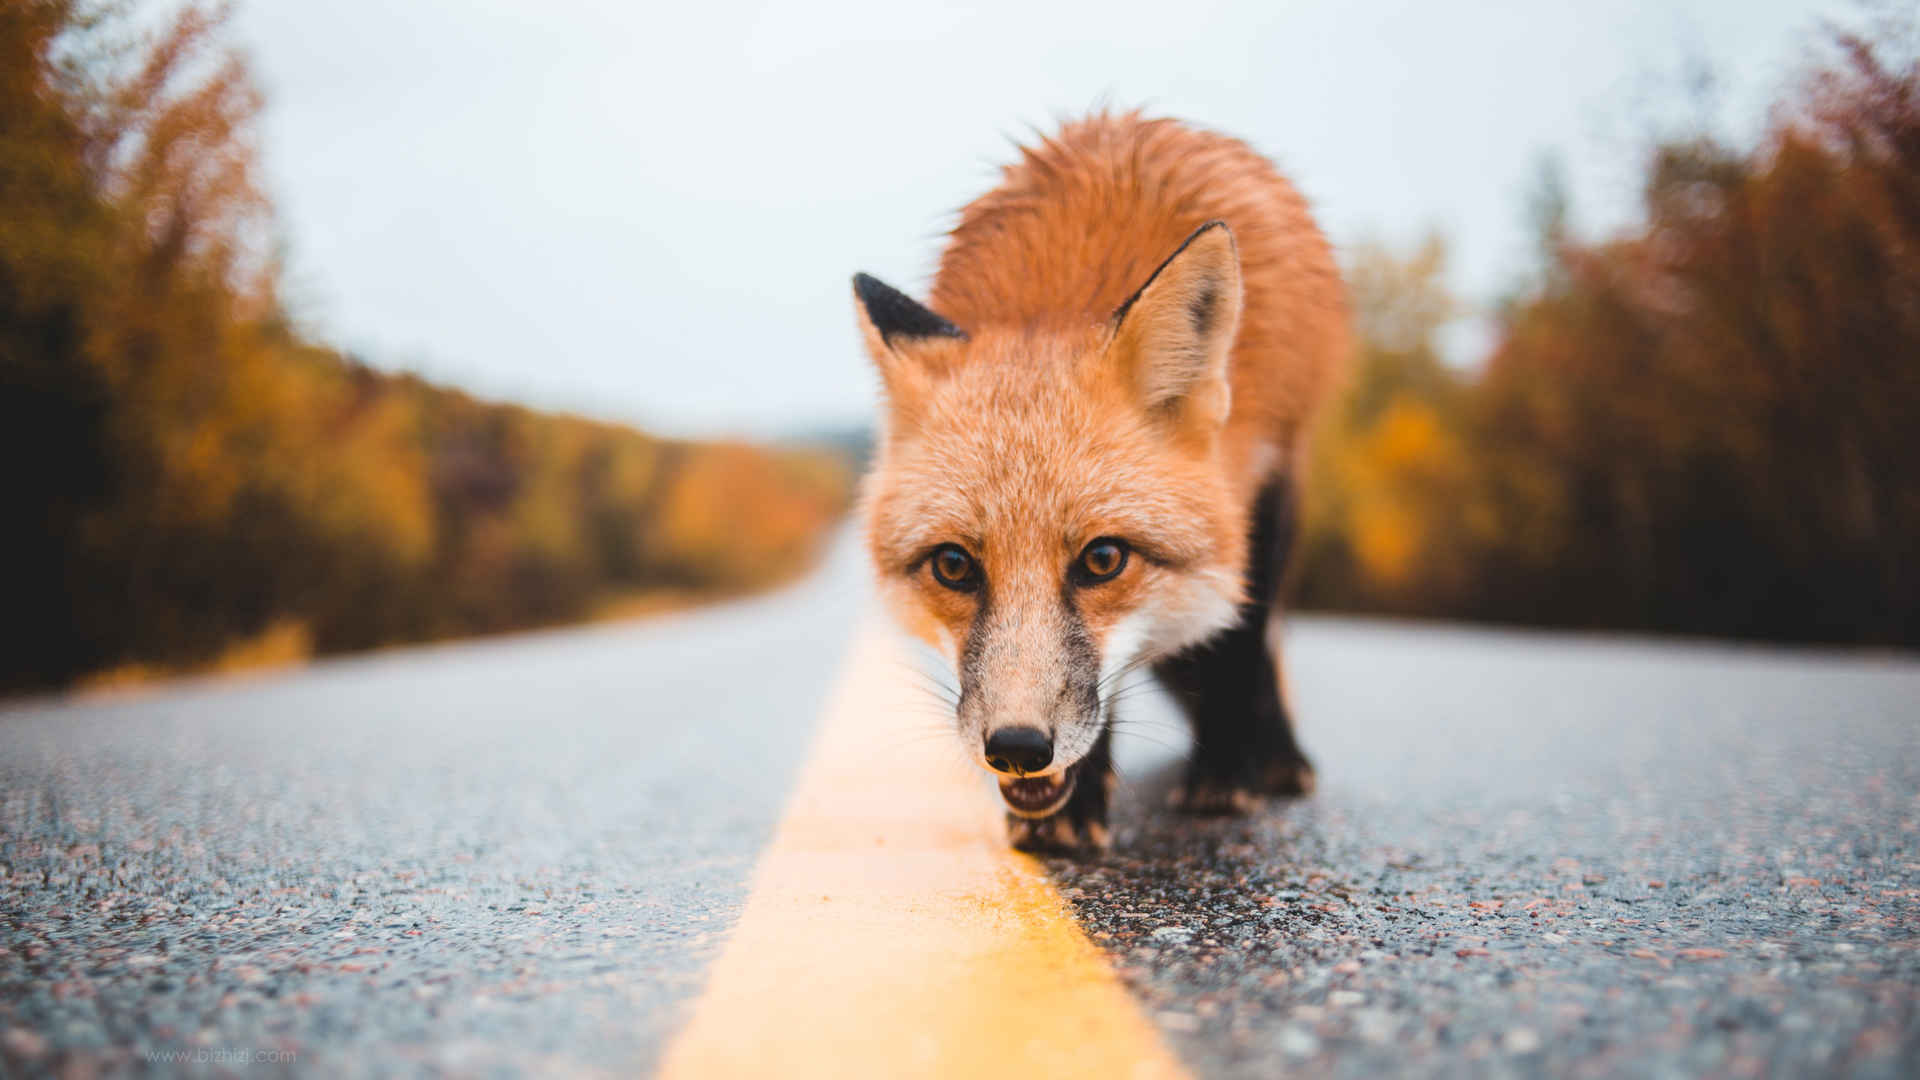 马路上的狐狸壁纸 